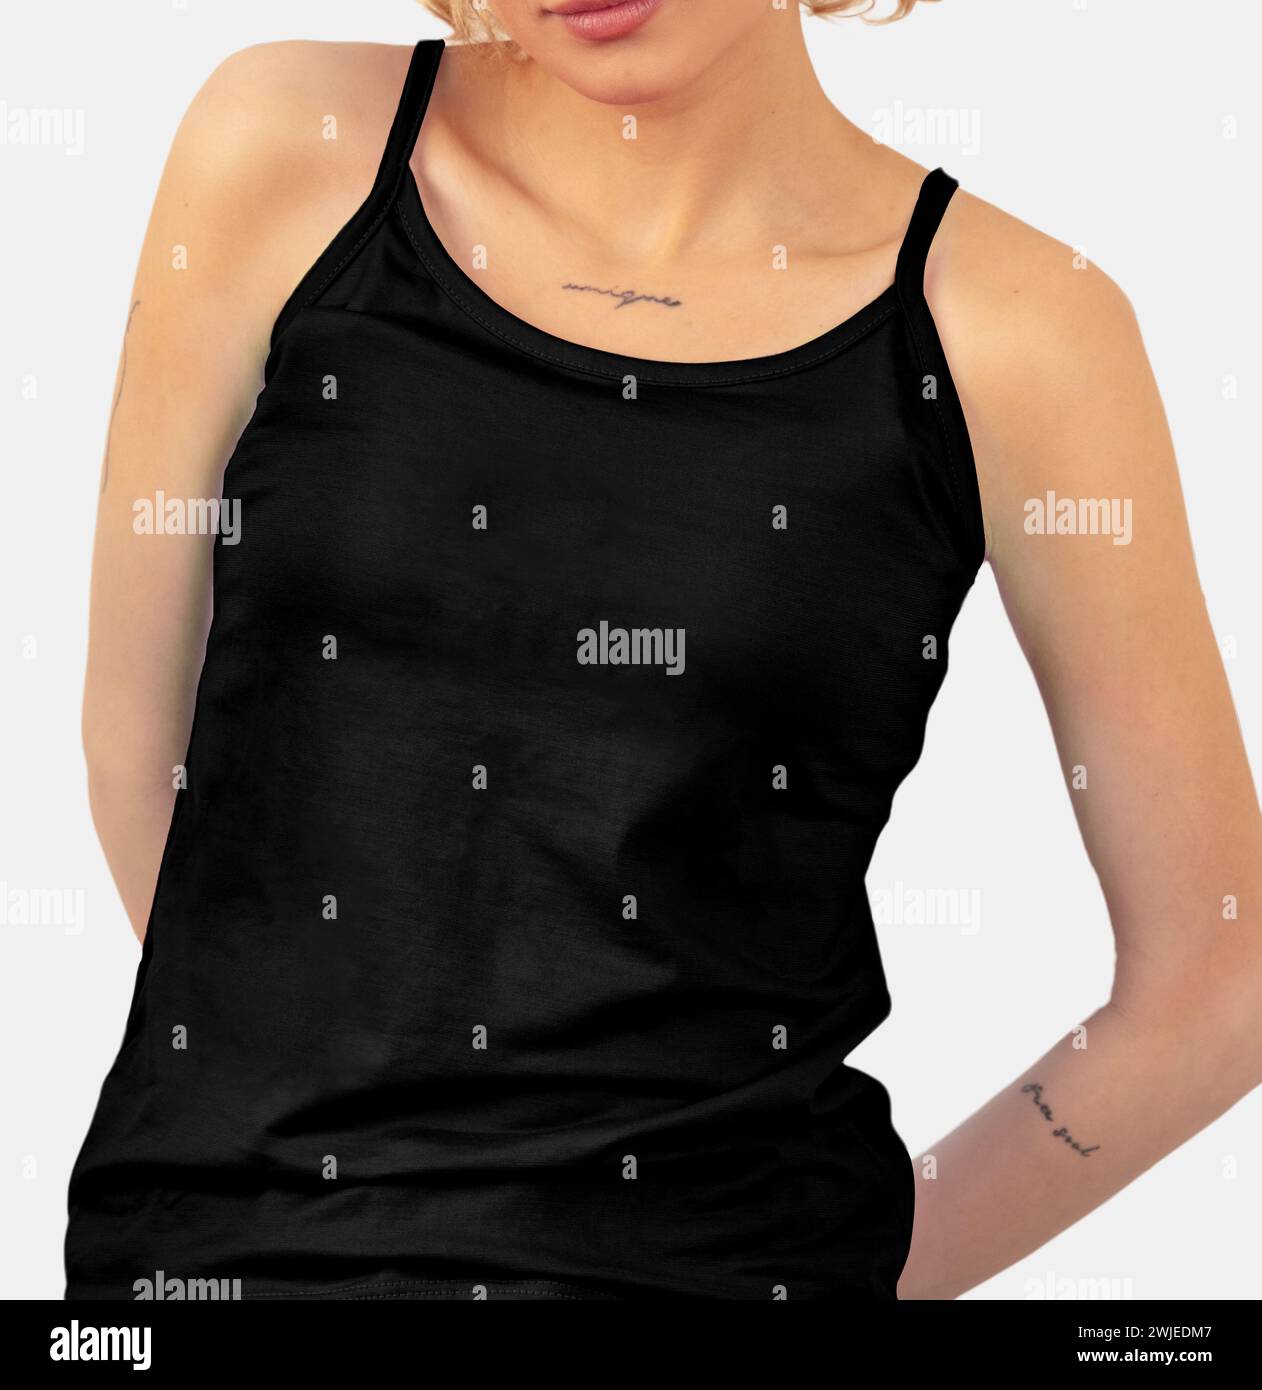 Frau mit schwarzem Tanktop, weißem Hintergrund. Modell, leer, bereit für Design. Stockfoto